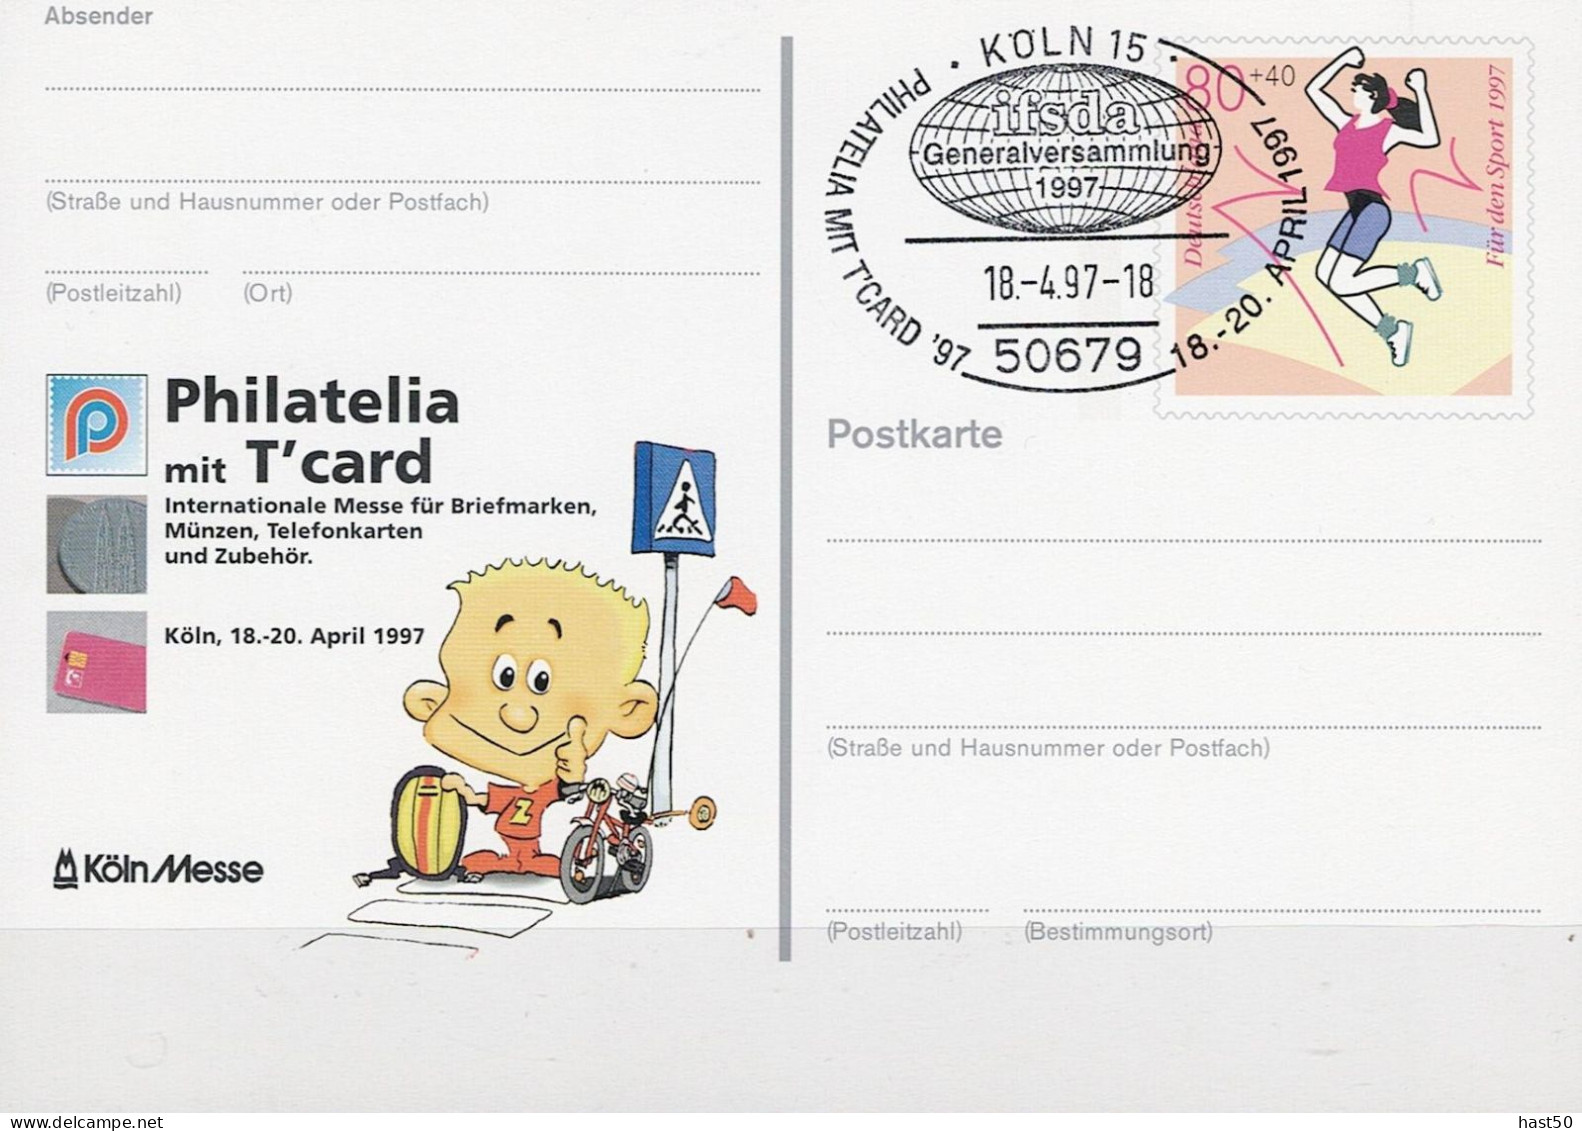 Deutschland Germany Allemagne - Sonderpostkarte Philatelia Mit T-Card Köln (MiNr: PSo 45) 1997 - Siehe Scan - Postkarten - Gebraucht